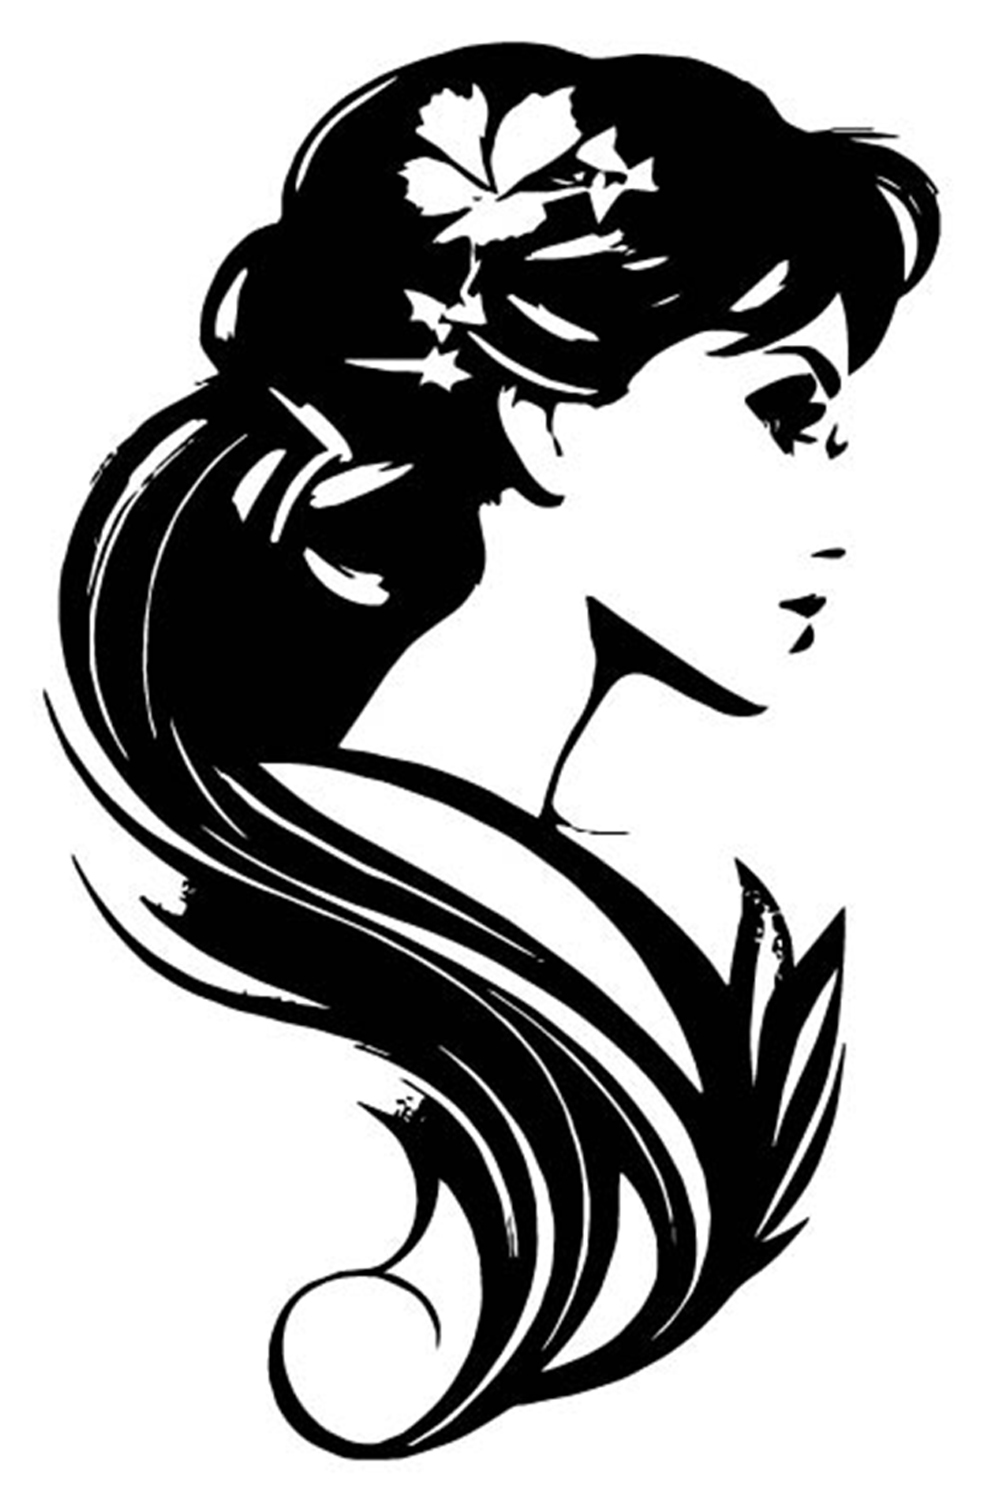 Beauty Girl Logo Illustration pinterest preview image.